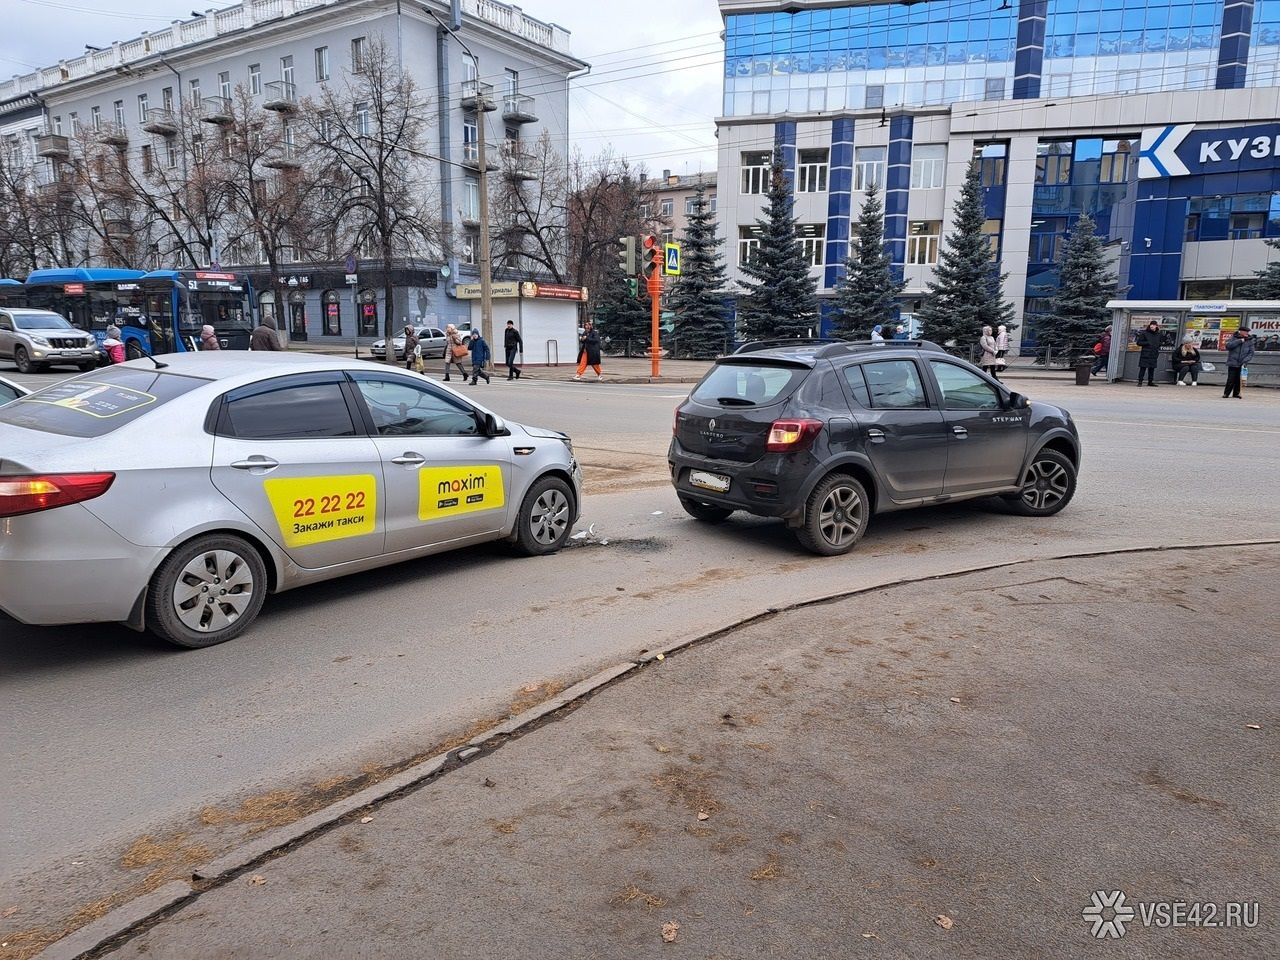 Дешевое такси кемерово. Такси Кемерово. Боковое ДТП такси в такси.